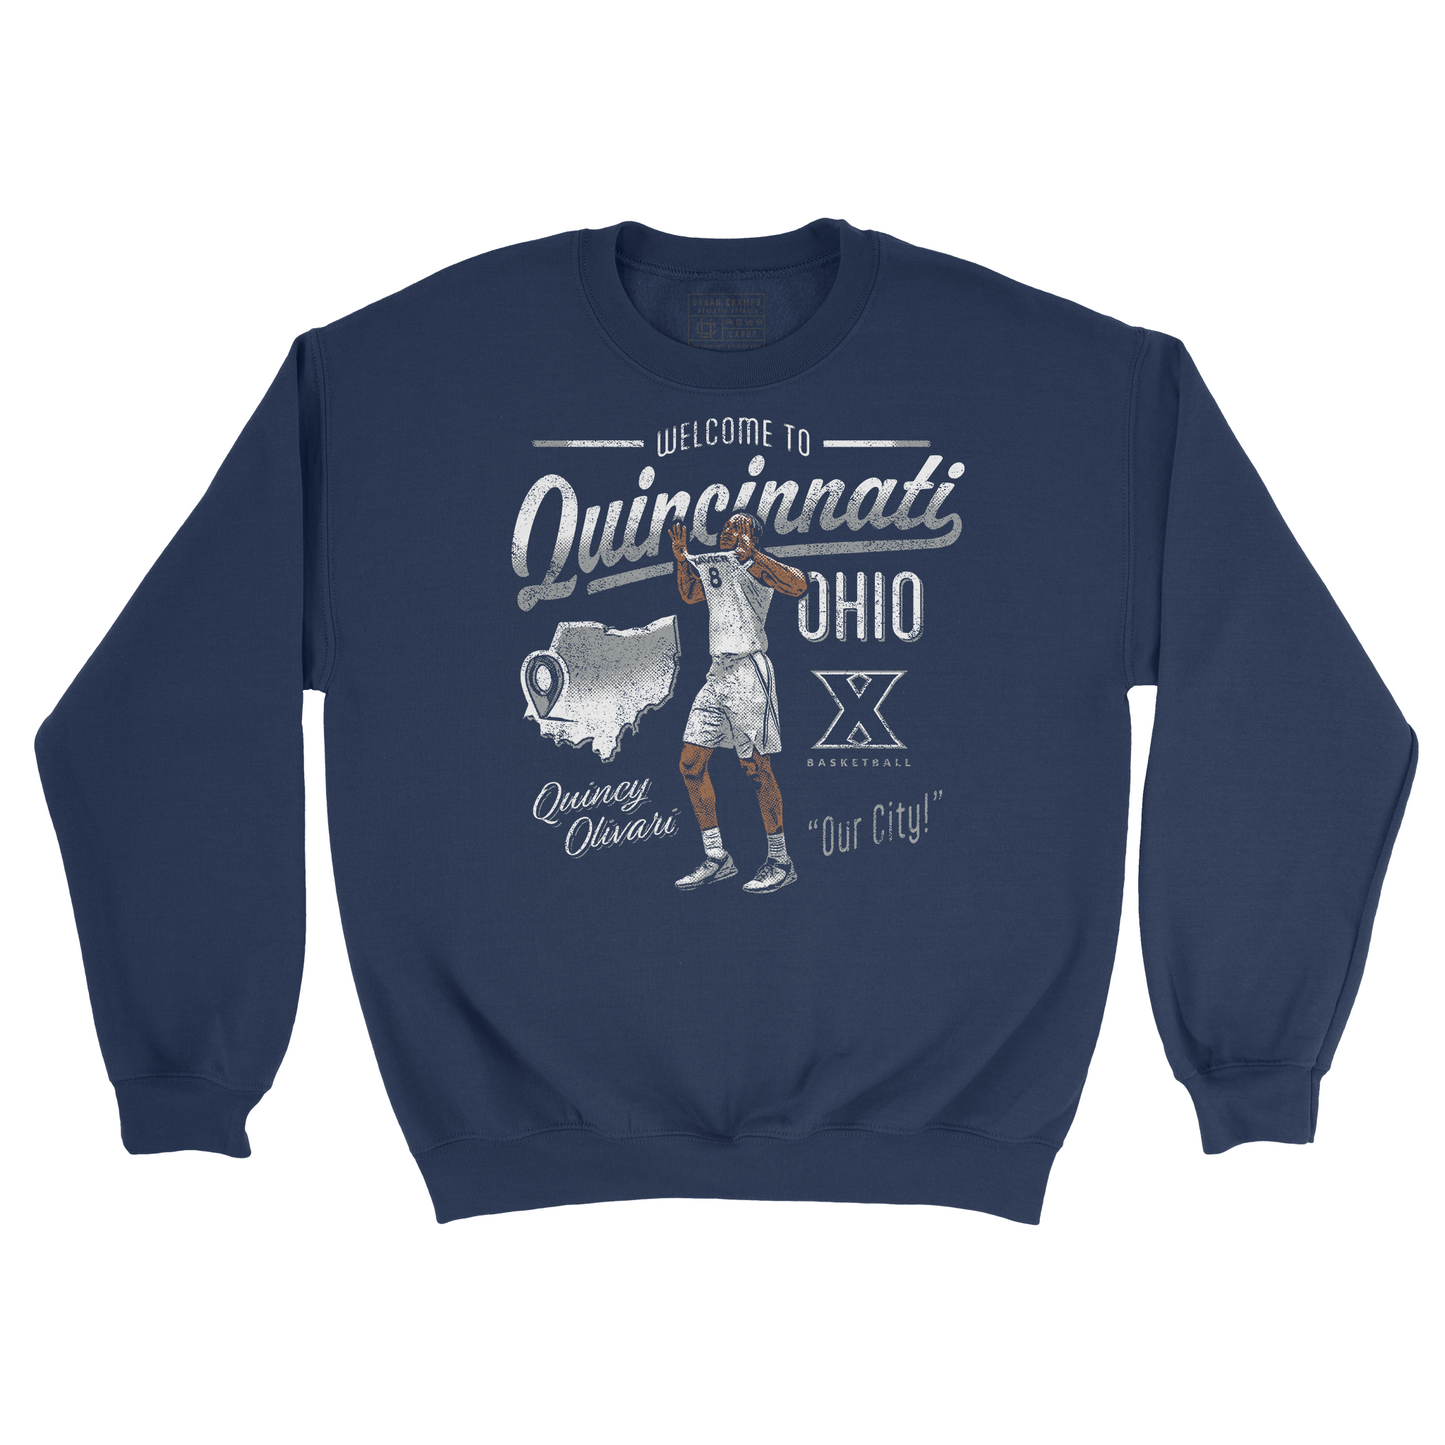 LIMITED RELEASE: Quincy Olivari "Quincinnati, Ohio" Crew